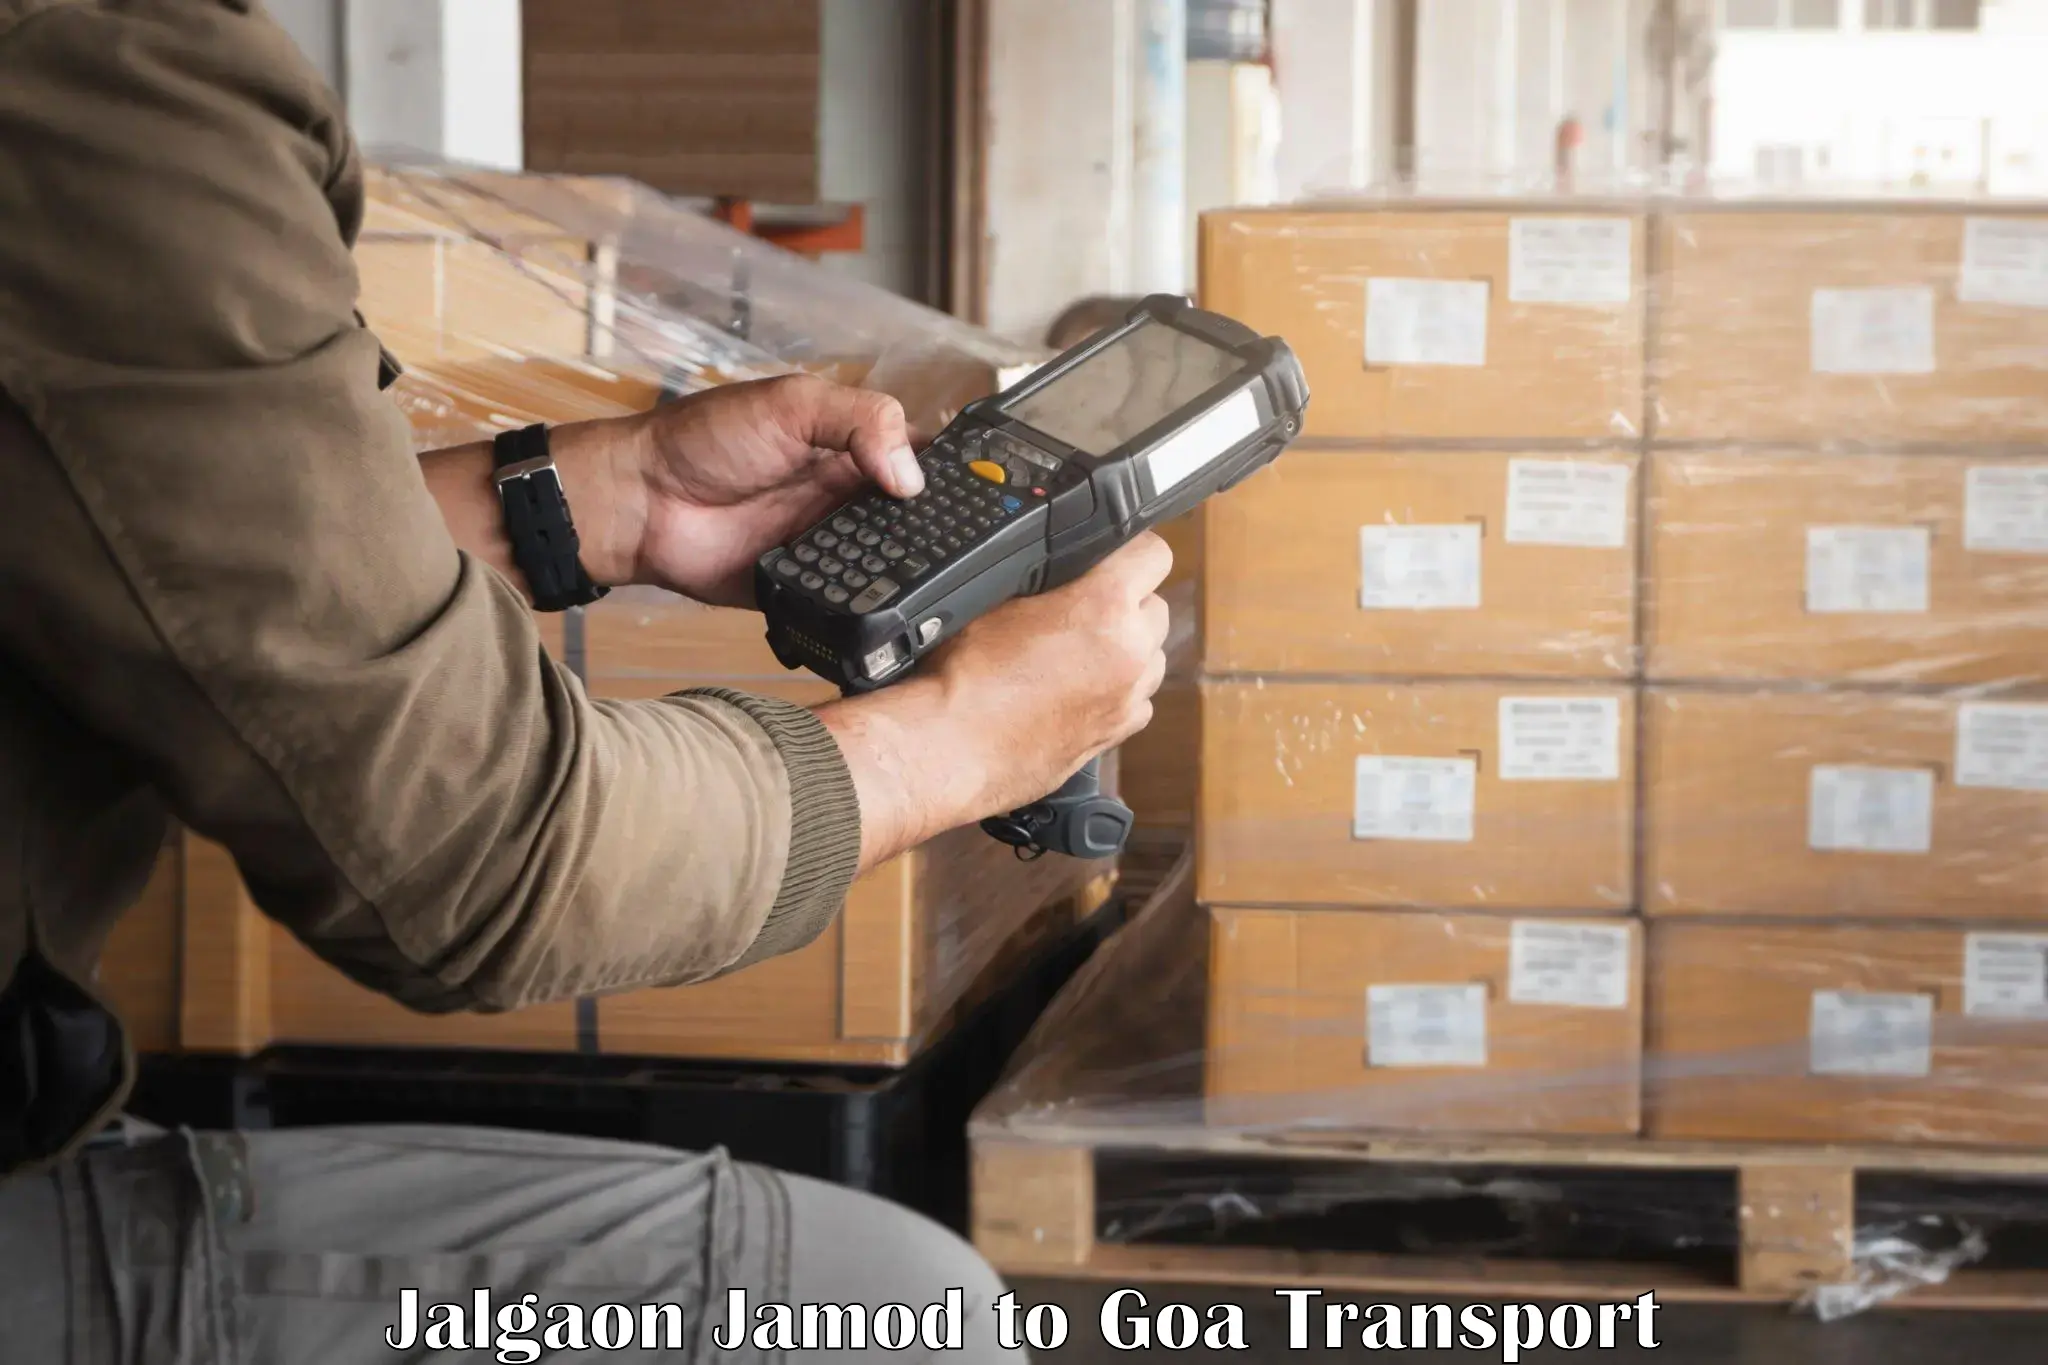 Transportation services Jalgaon Jamod to Vasco da Gama